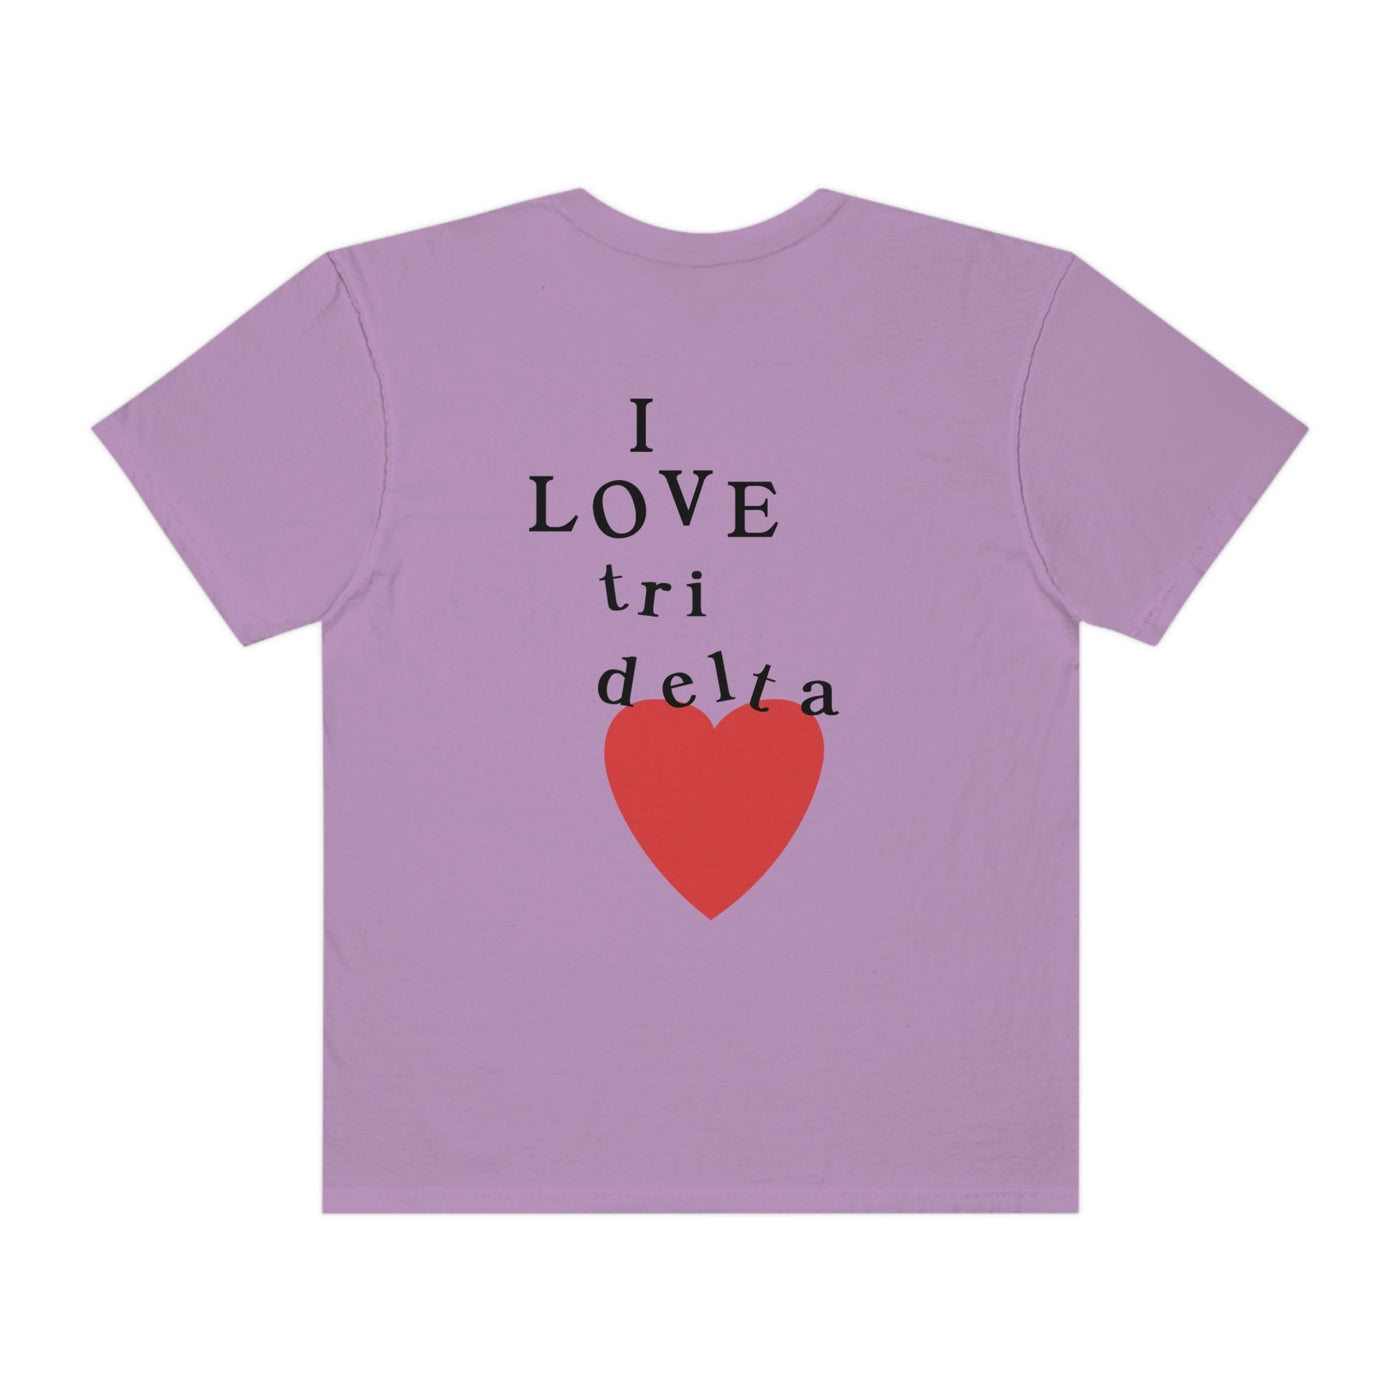 I Love Delta Delta Delta Sorority Comfy T-Shirt